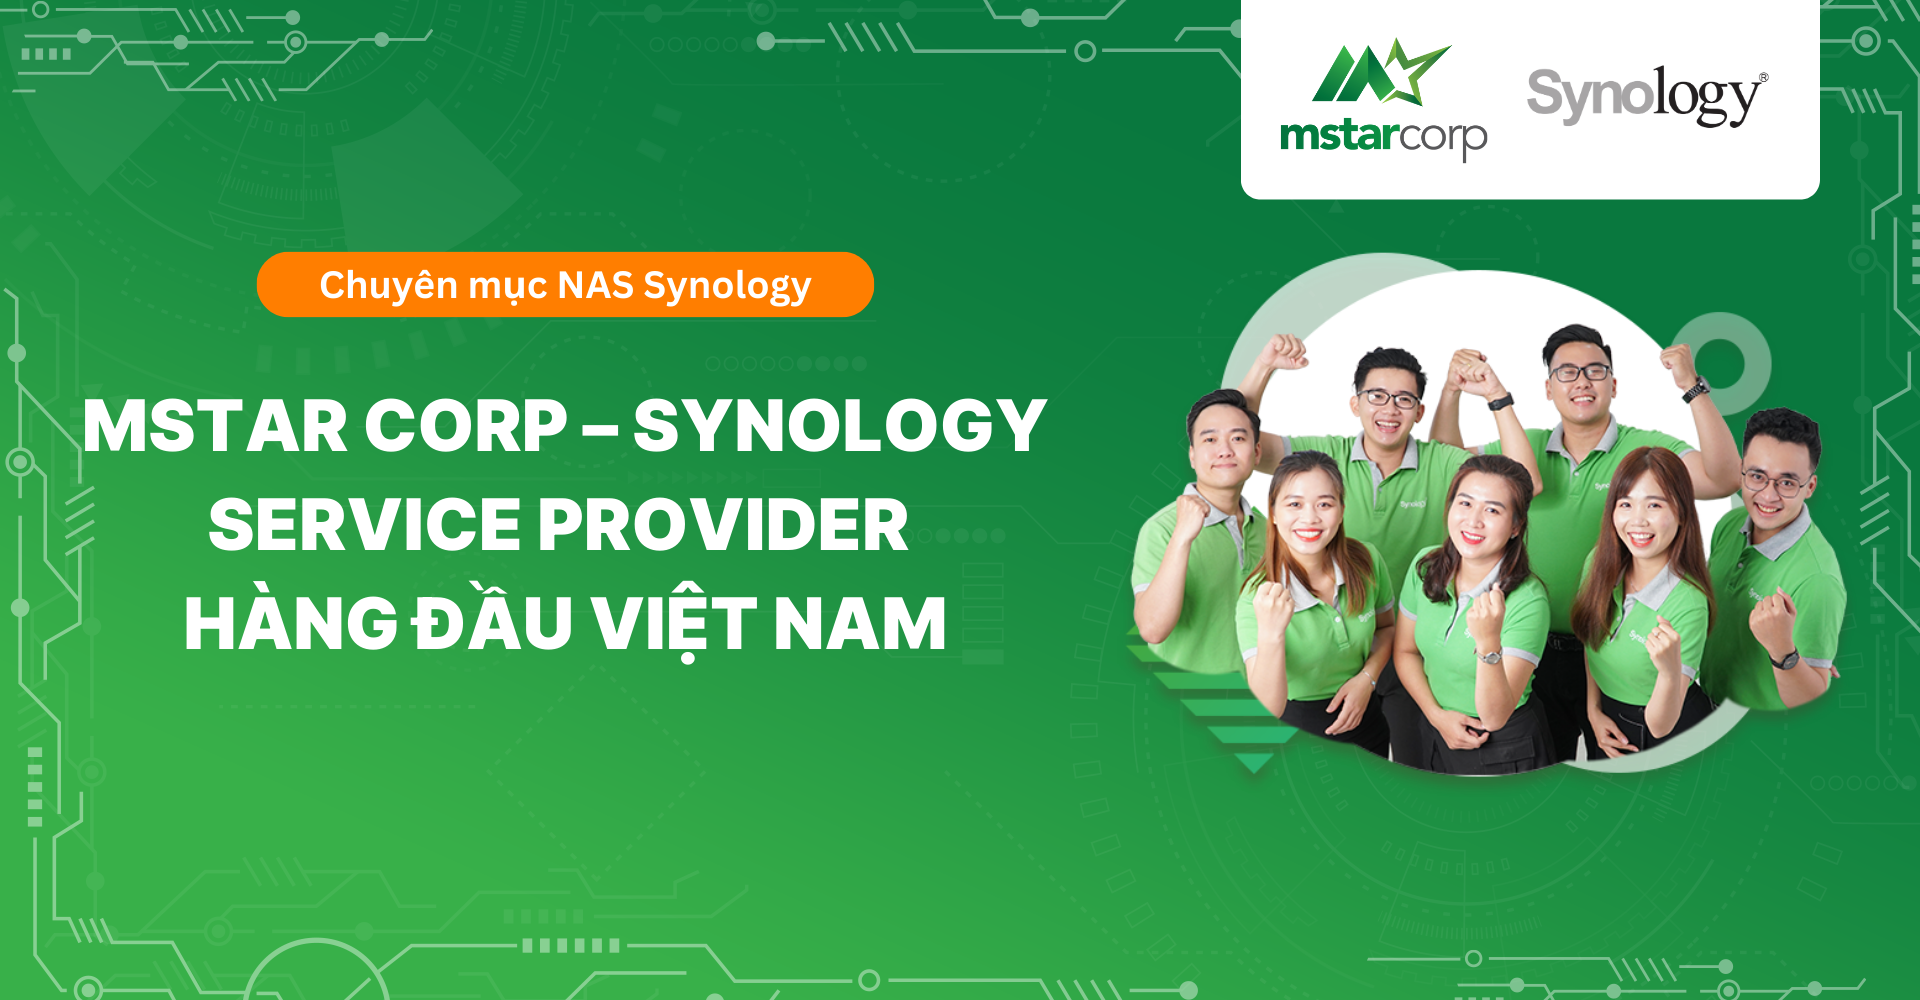 Mstar Corp - Synology Service Provider hàng đầu Việt Nam